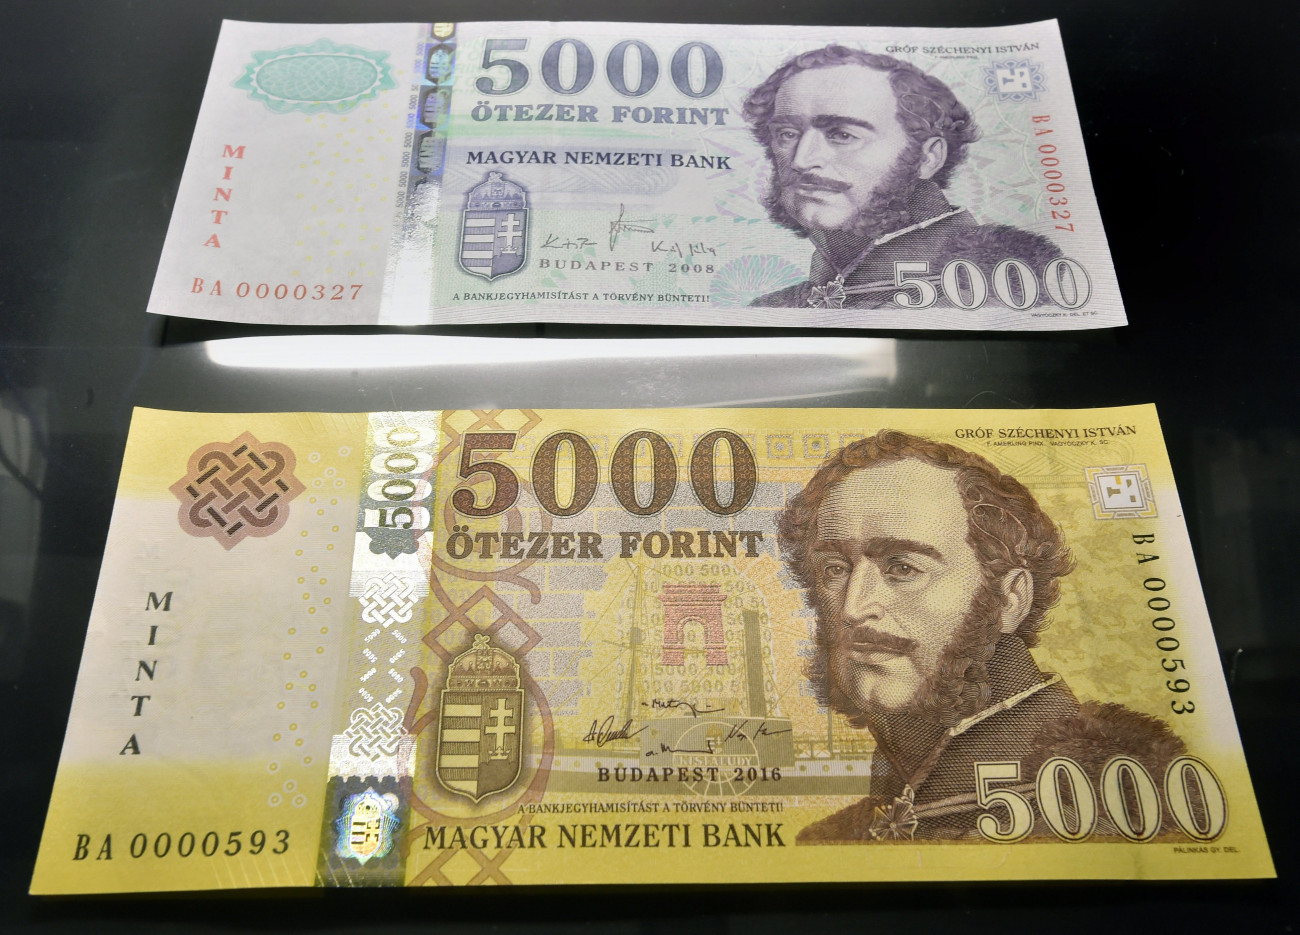 Budapest, 2016. november 14.
Az új 5000 forintos bankjegy mintája (alul) az azonos címletű jelenlegi bankjegy mellett a Magyar Nemzeti Bank (MNB) fővárosi székházában tartott sajtótájékoztatón 2016. november 14-én. Megújulnak a 2000 és az 5000 forintos címletű bankjegyek, az új bankók november 15-étől válnak törvényes fizetőeszközzé, de a készpénzforgalomban csak 2017. március 1-jétől lehet találkozni velük. A jelenlegi bankjegyek 2017. július 31-ig maradnak a készpénzforgalomban.
MTI Fotó: Máthé Zoltán